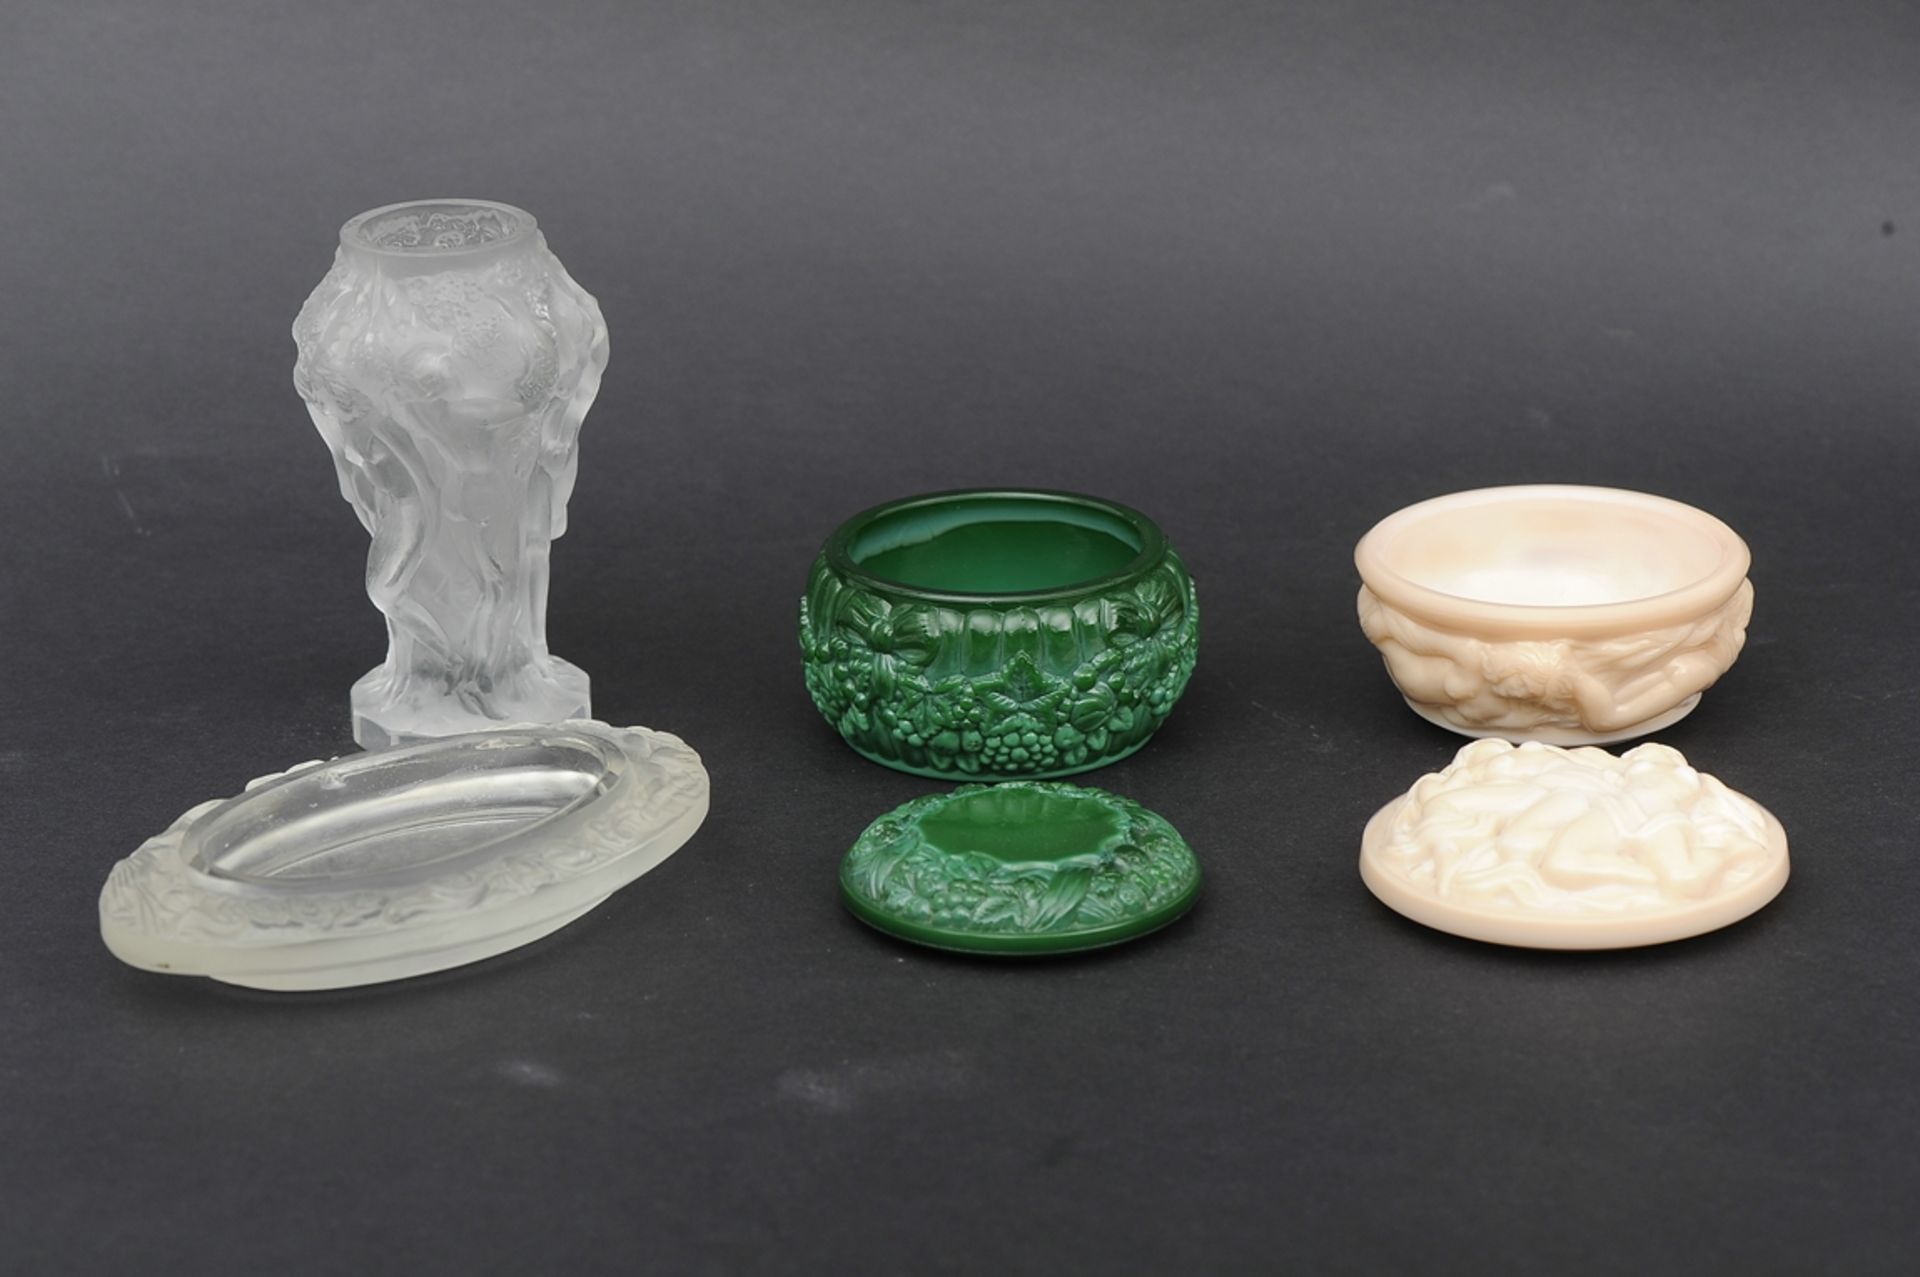 4teiliges Lot unterschiedlicher, ornamental gestalteter Pressglas - Objekte, teilweise Böhmen, best